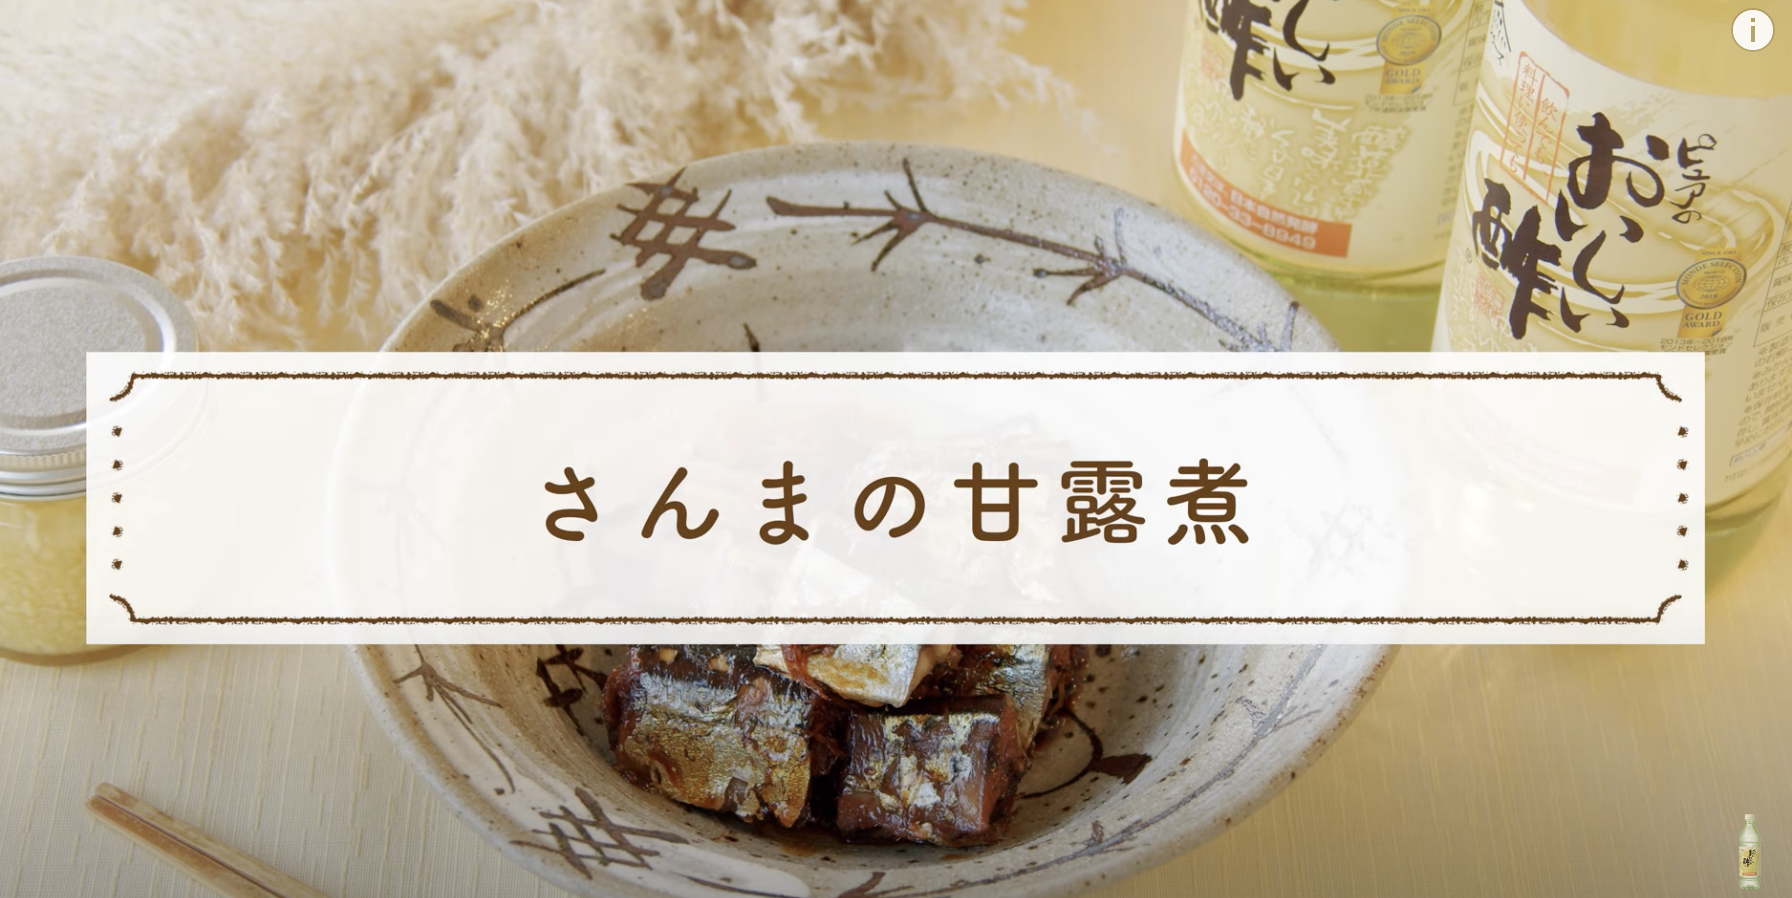 YouTube「あそれいのおいしい酢クッキング」-骨まで食べられる秋刀魚の甘露煮-の作り方